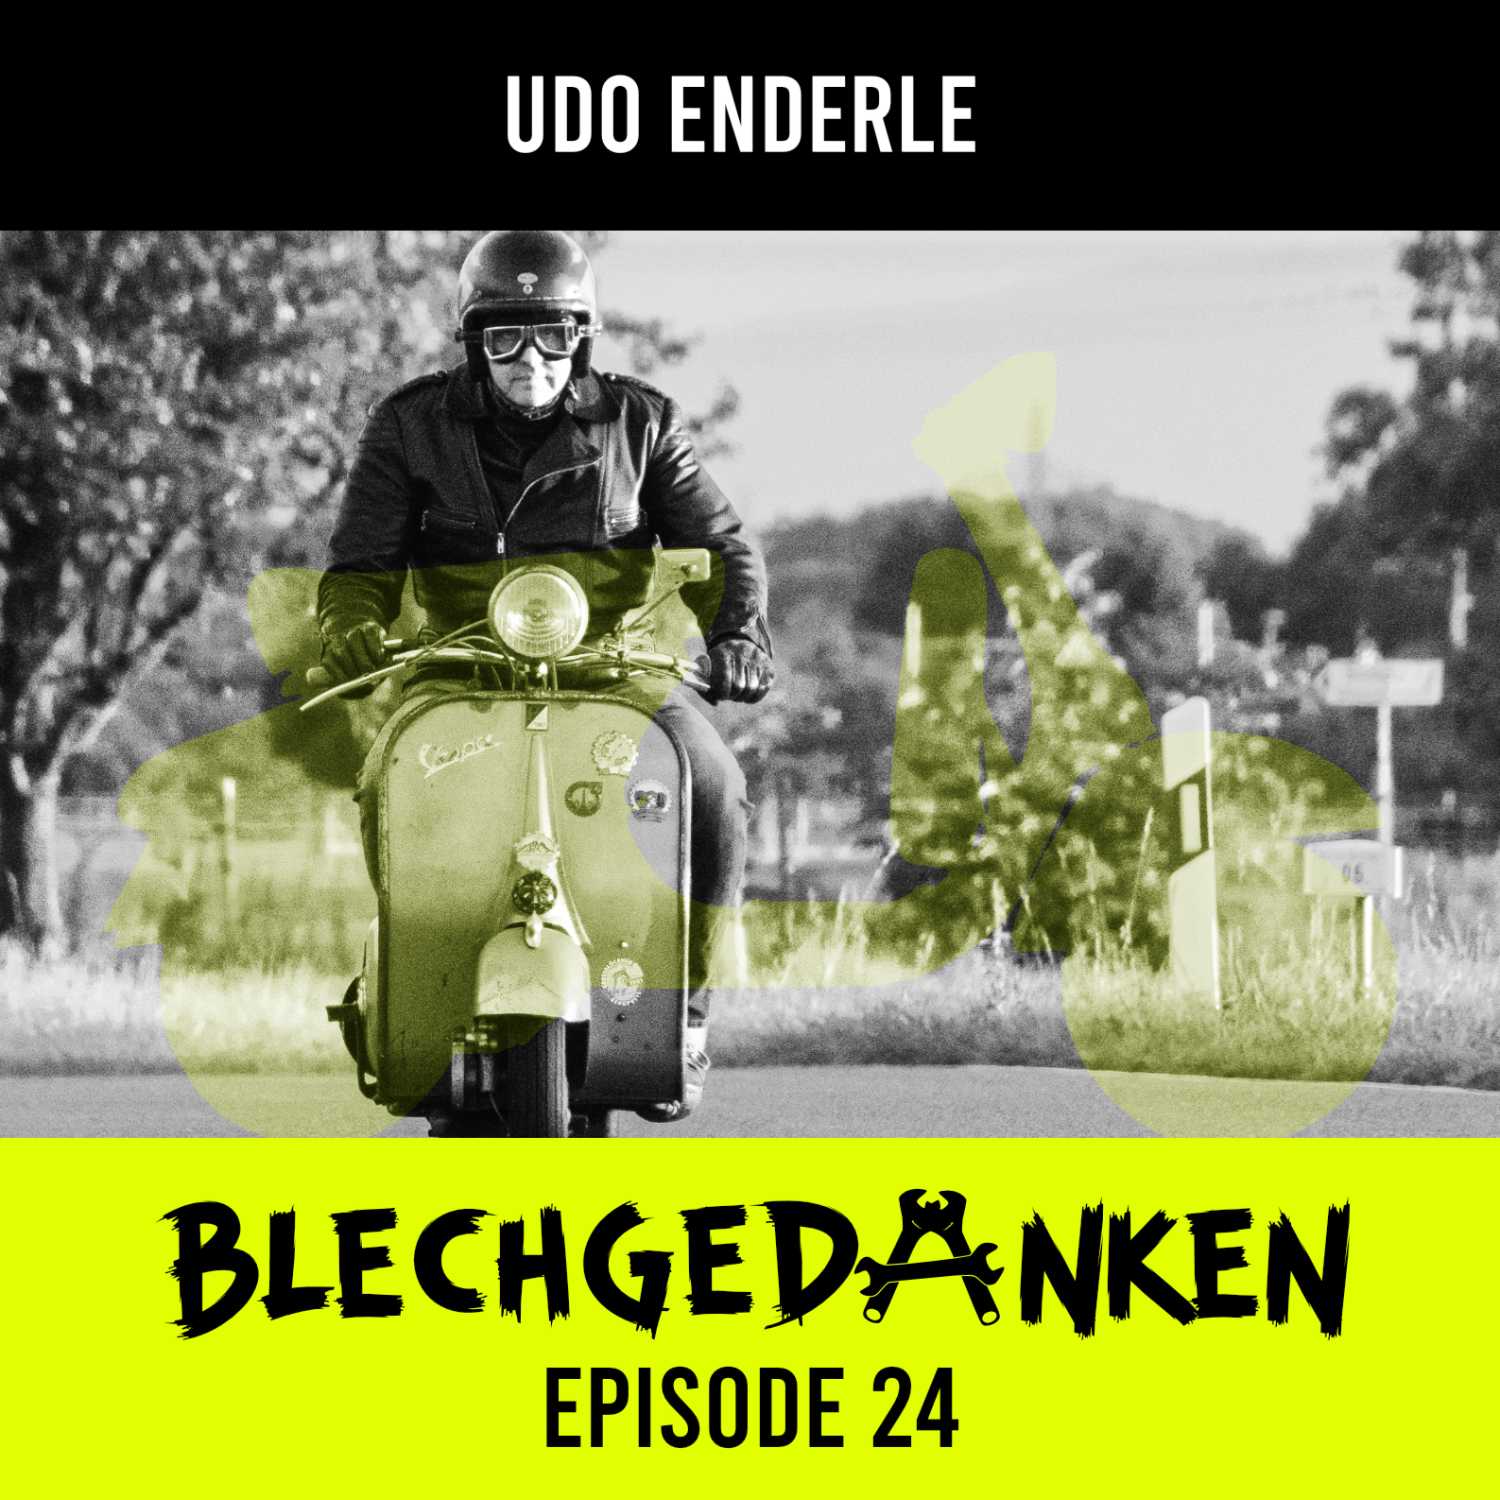 Blechgedanken Episode 24 – Udo Enderle – Wideframesupport mit Herzblut und Hingabe